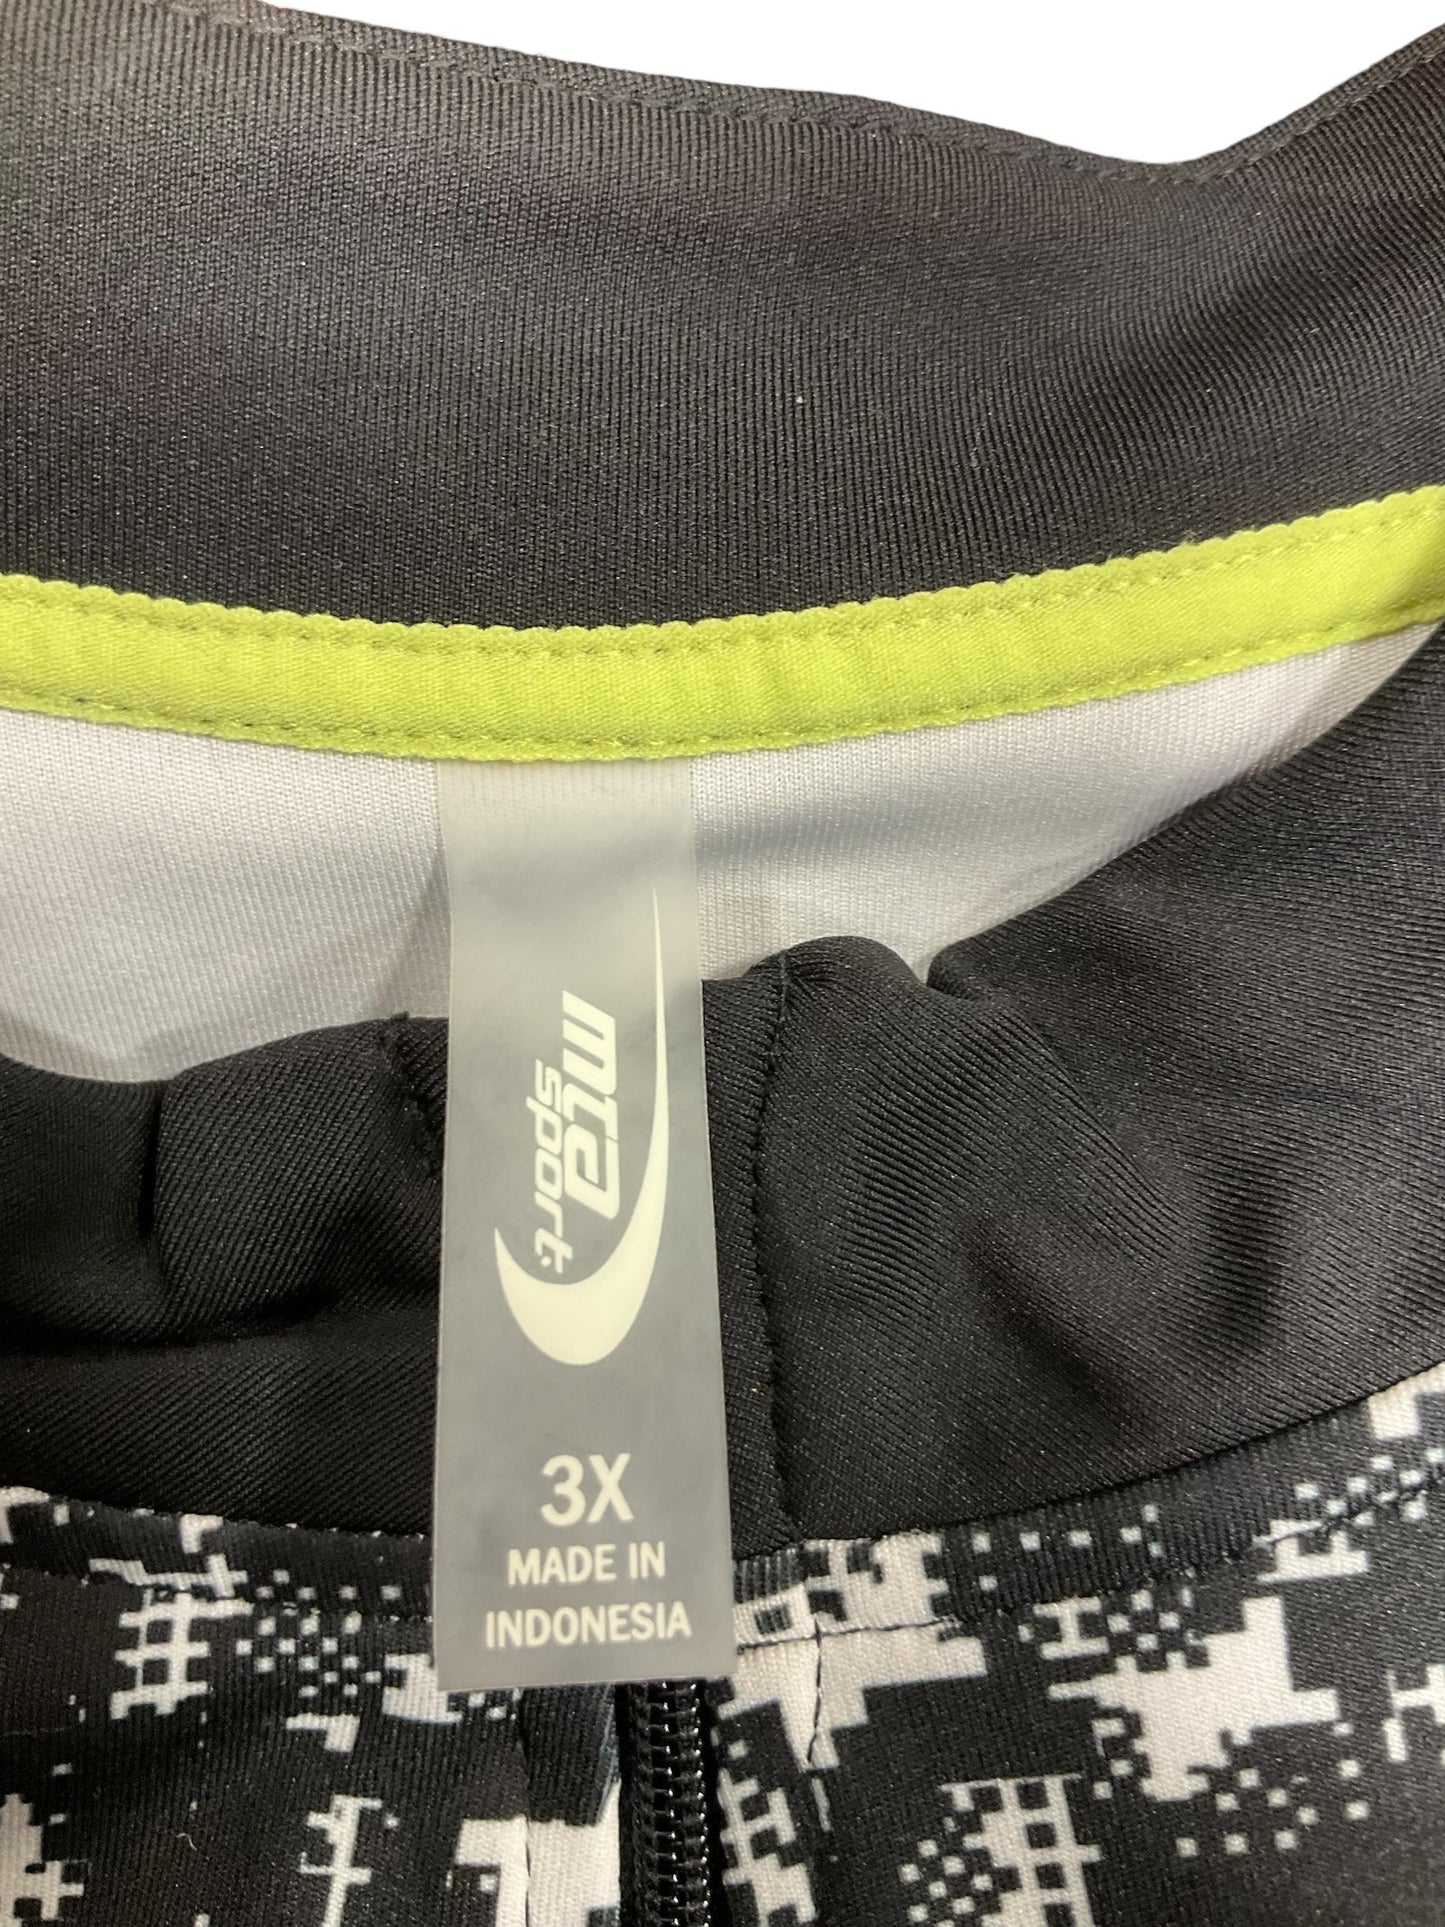 Black & White Athletic Jacket Mta Pro, Size 3x